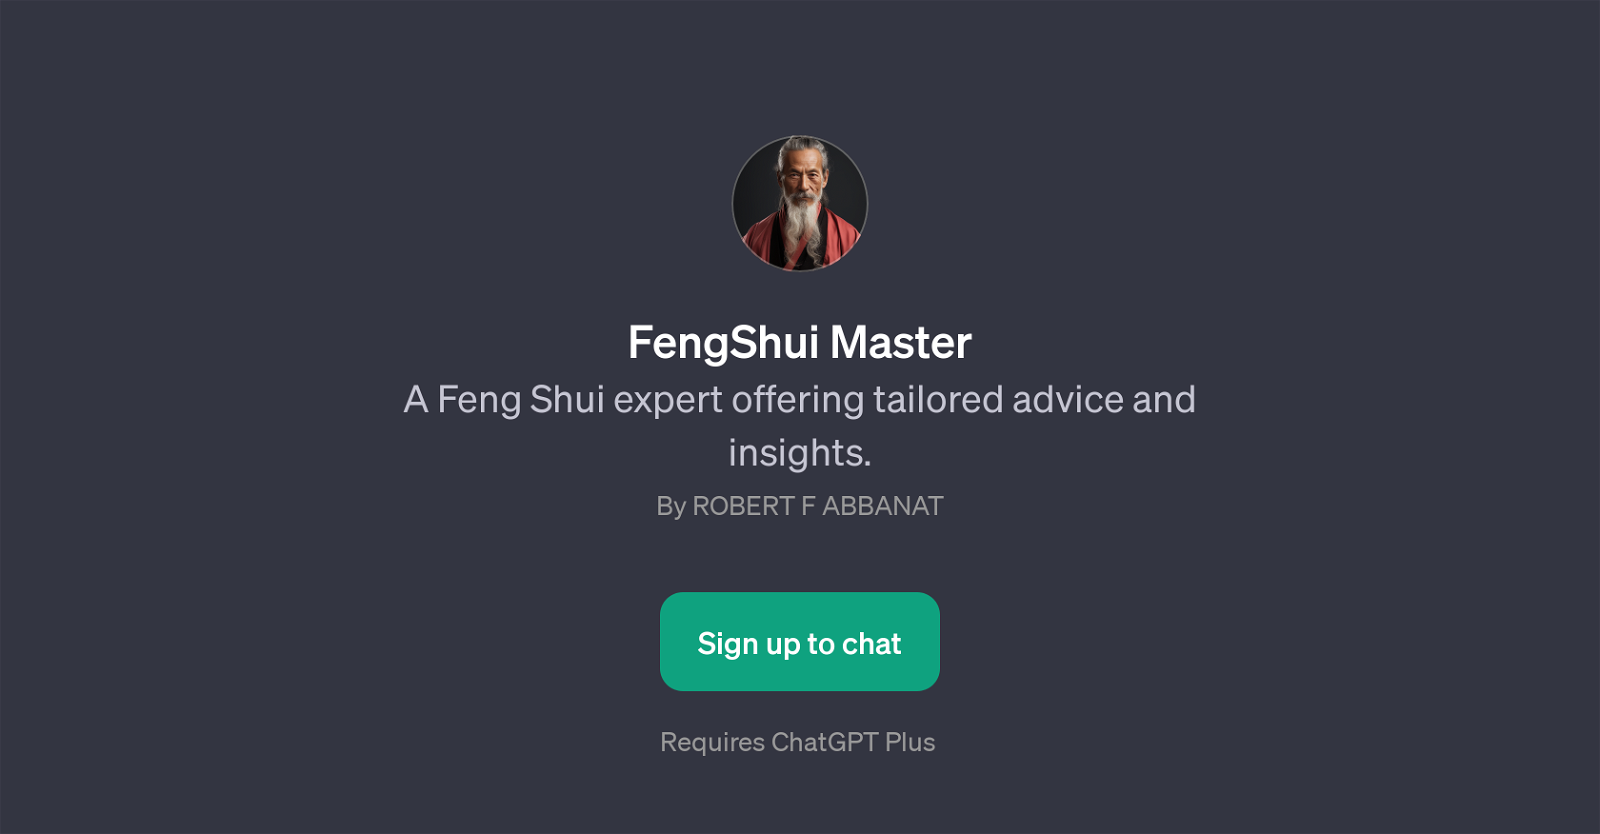 FengShui Master website